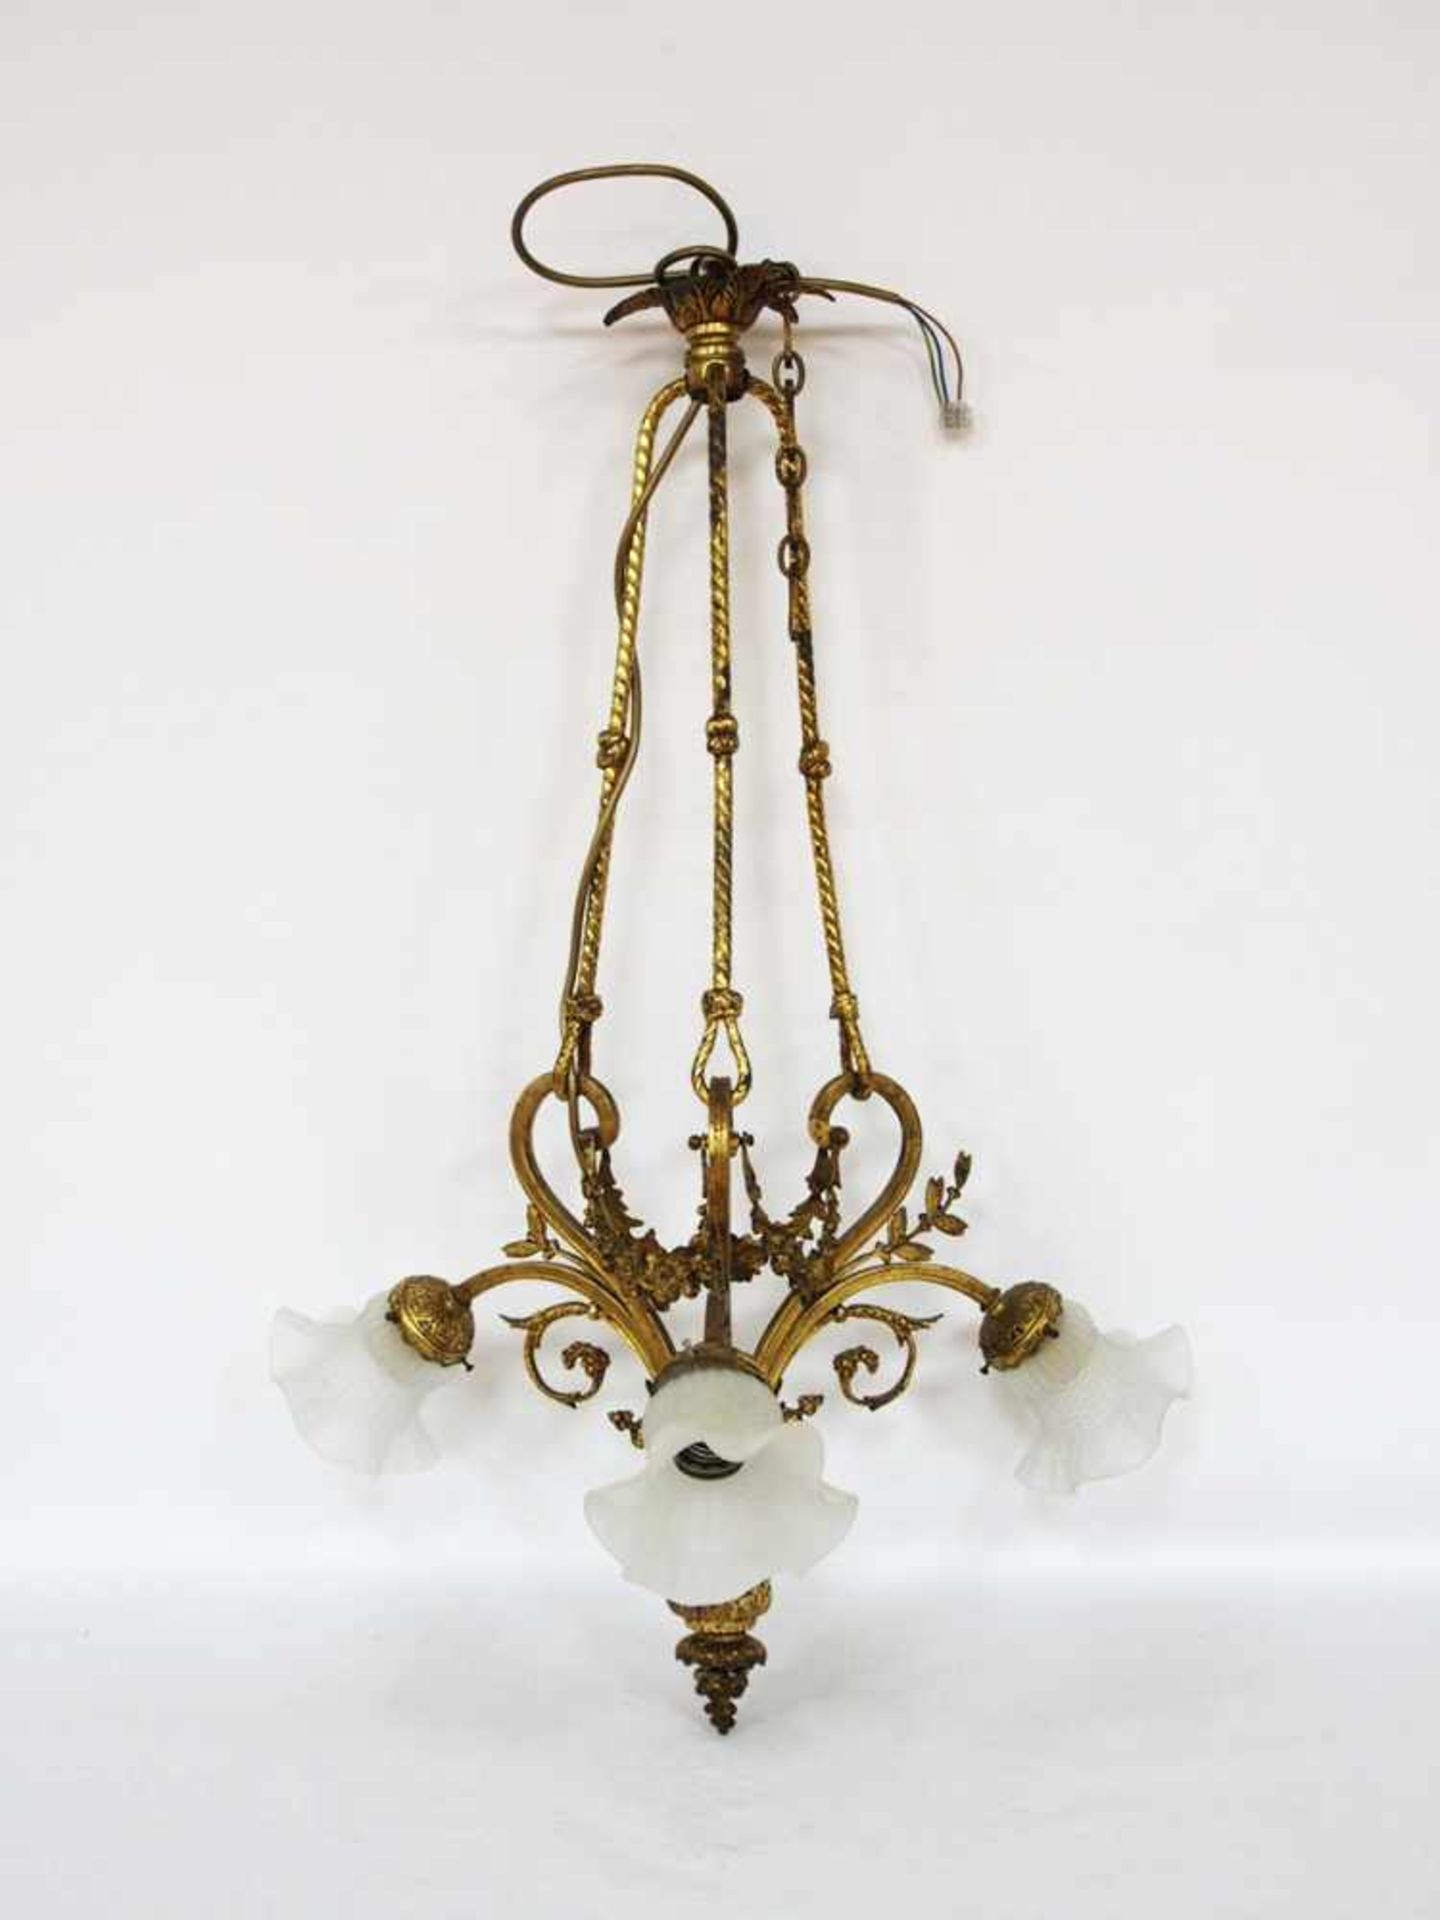 Dreiflammiger DeckenleuchterBronze, vergoldet, 3 Glasschirme, Frankreich 19. Jahrhundert, Höhe 90